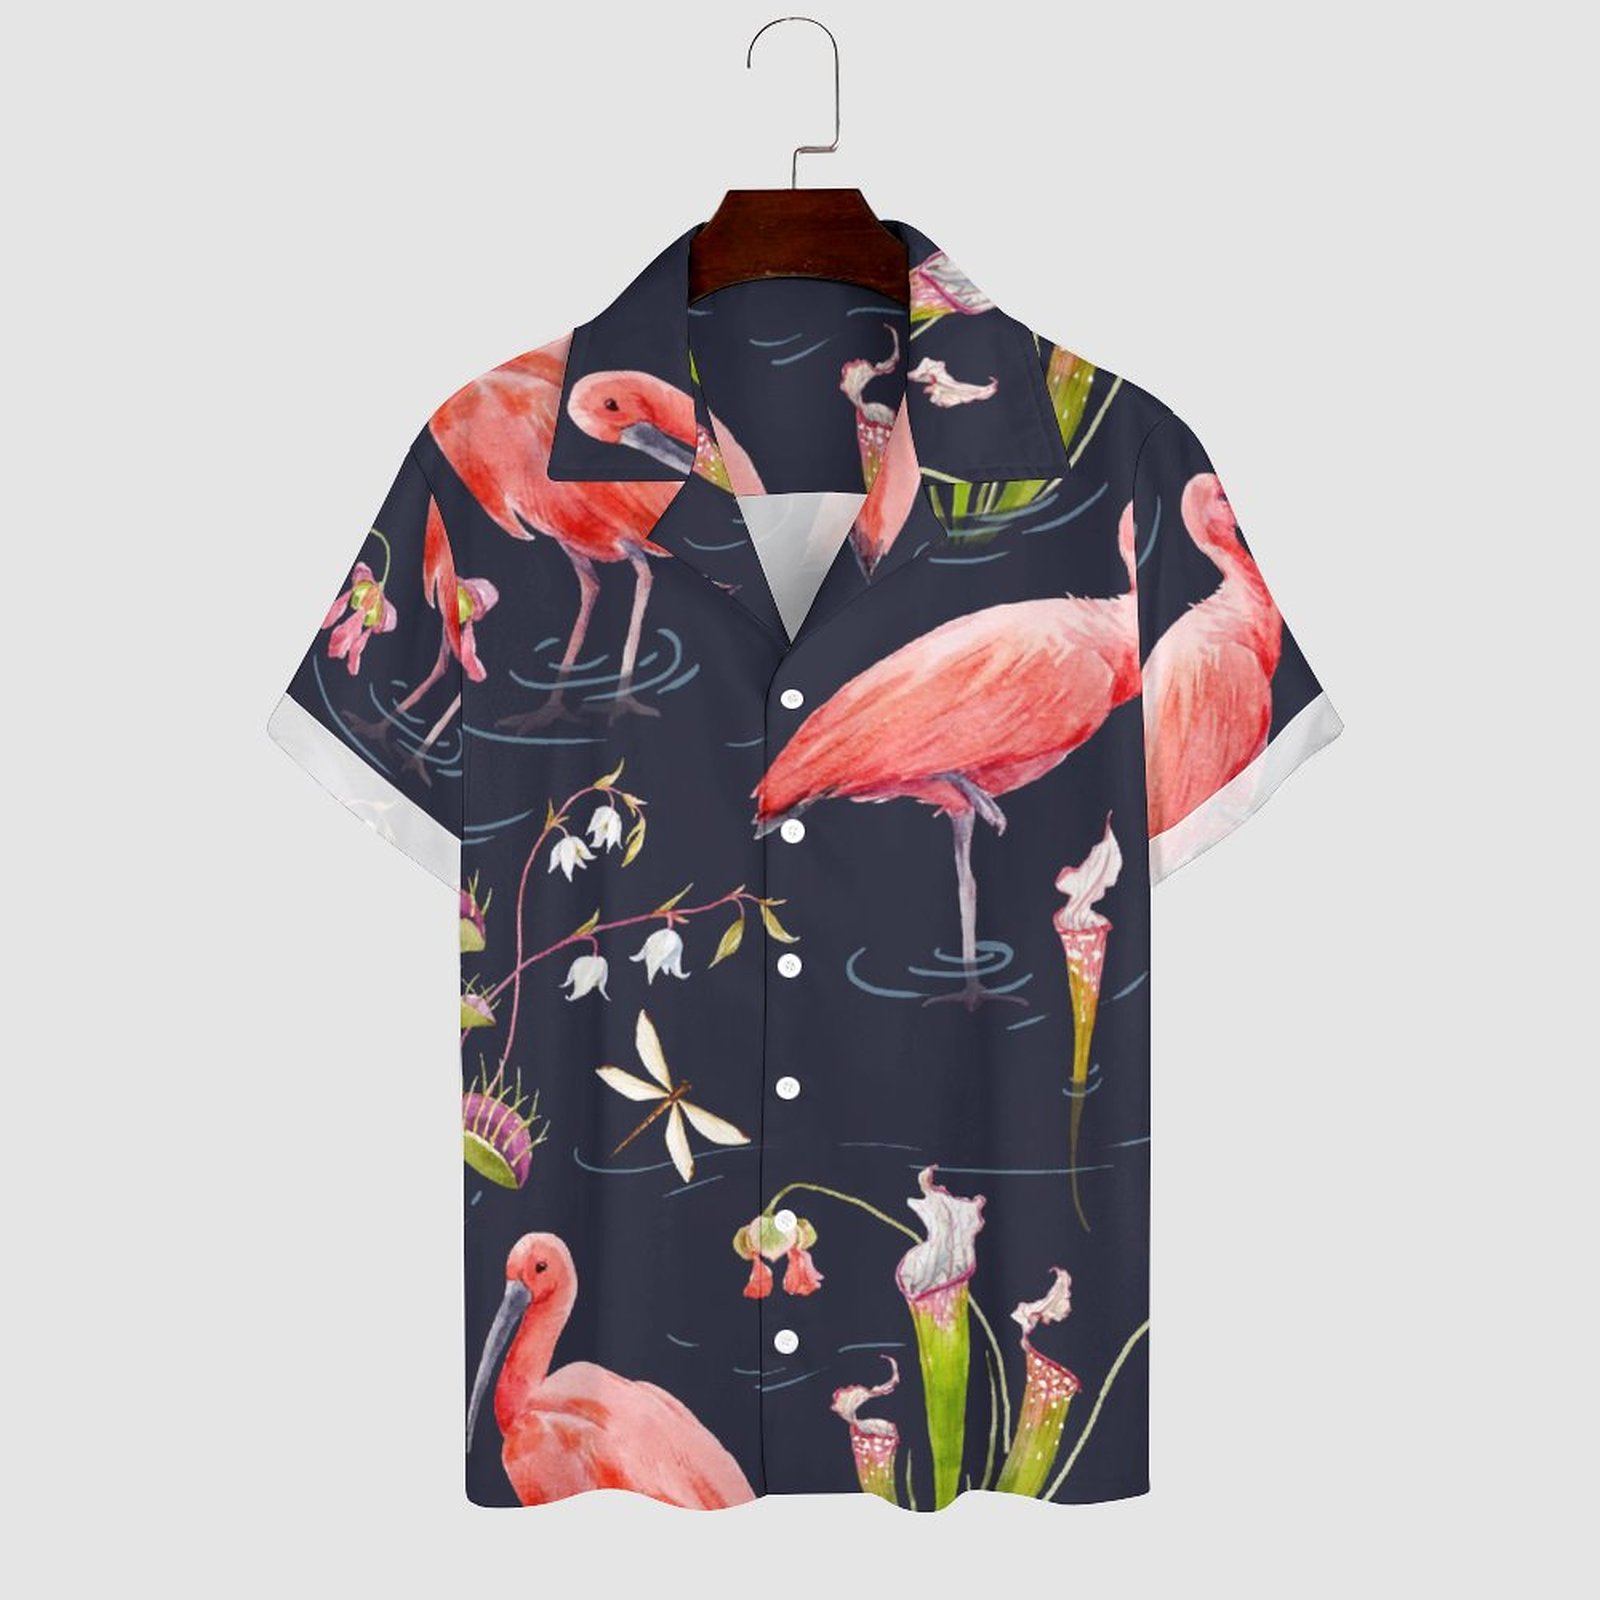 Men's Hawaiian Print Casual Shirt